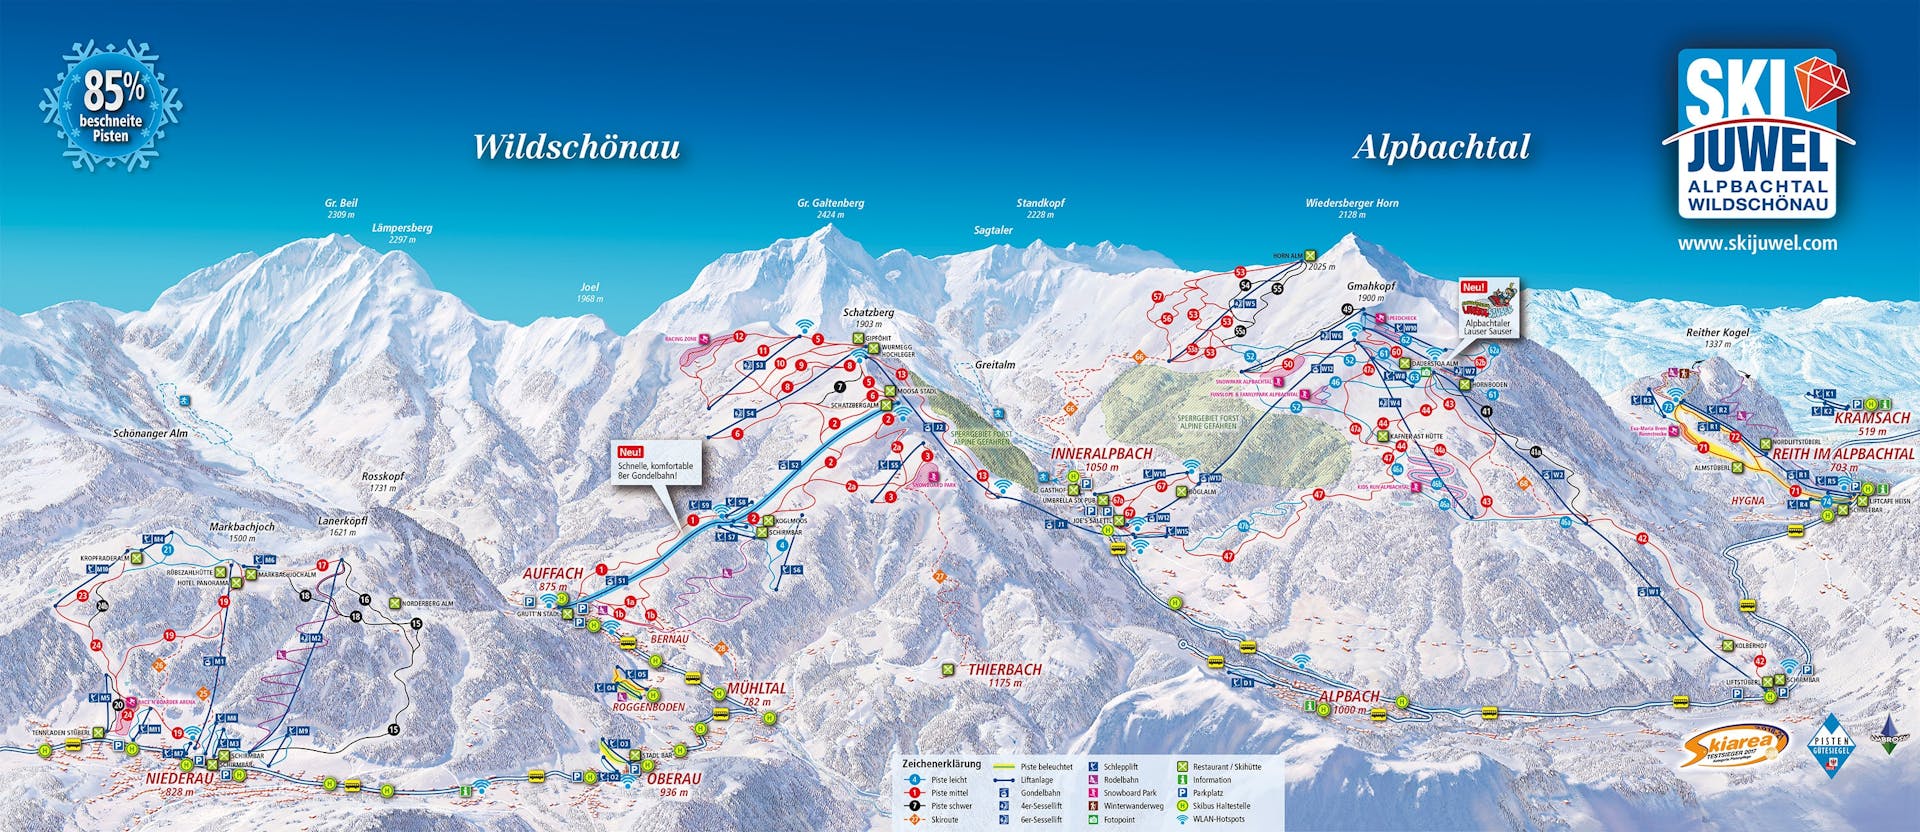 Oberau-Wildschonau ski map